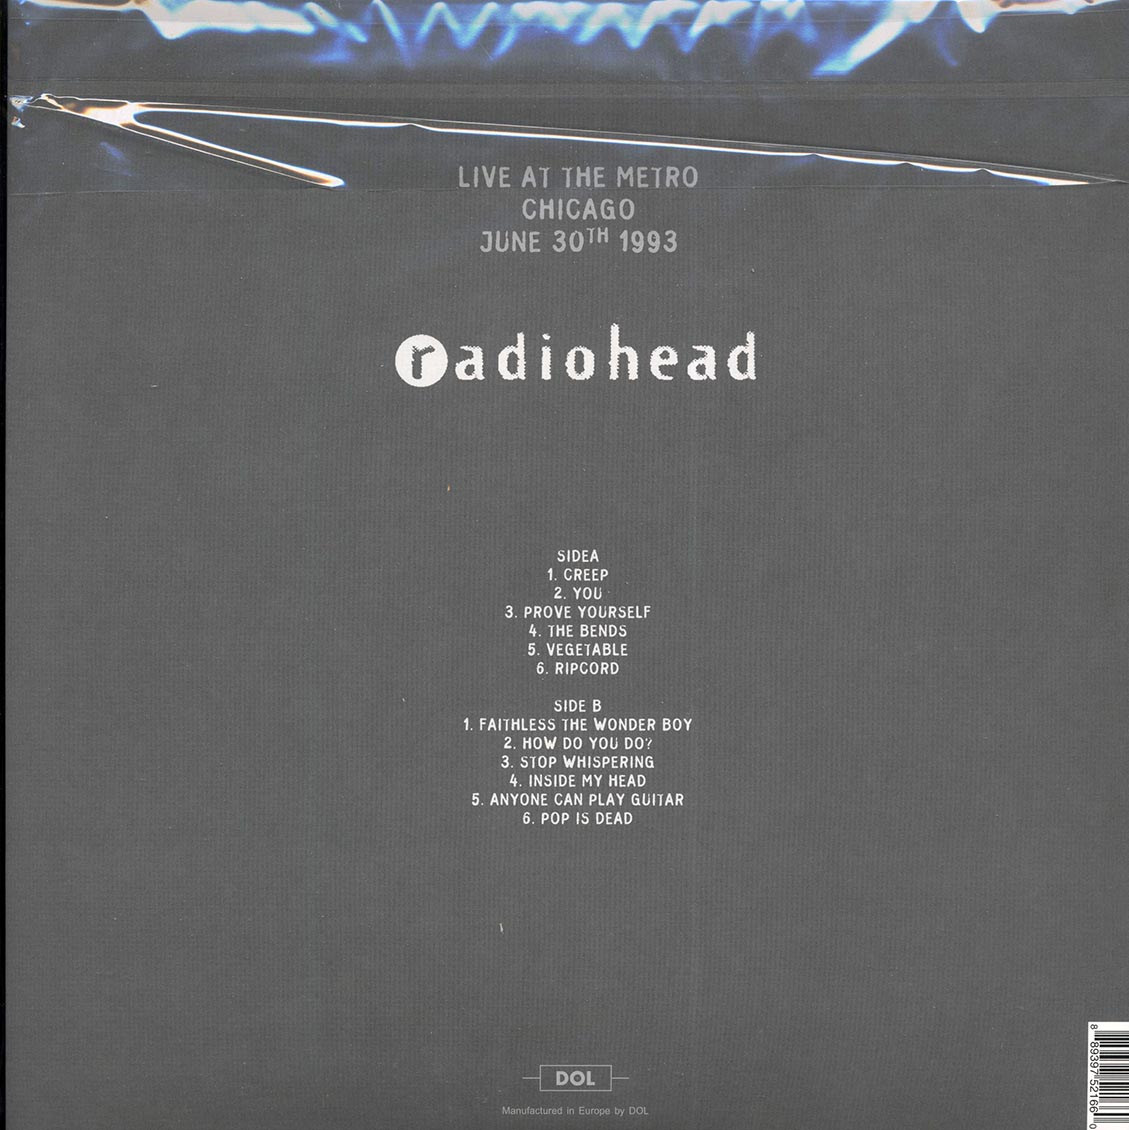 Radiohead - Live In Chicago: Radio Metro June 30th 1993 (ltd. ed.) (picture disc) - Vinyl LP, LP